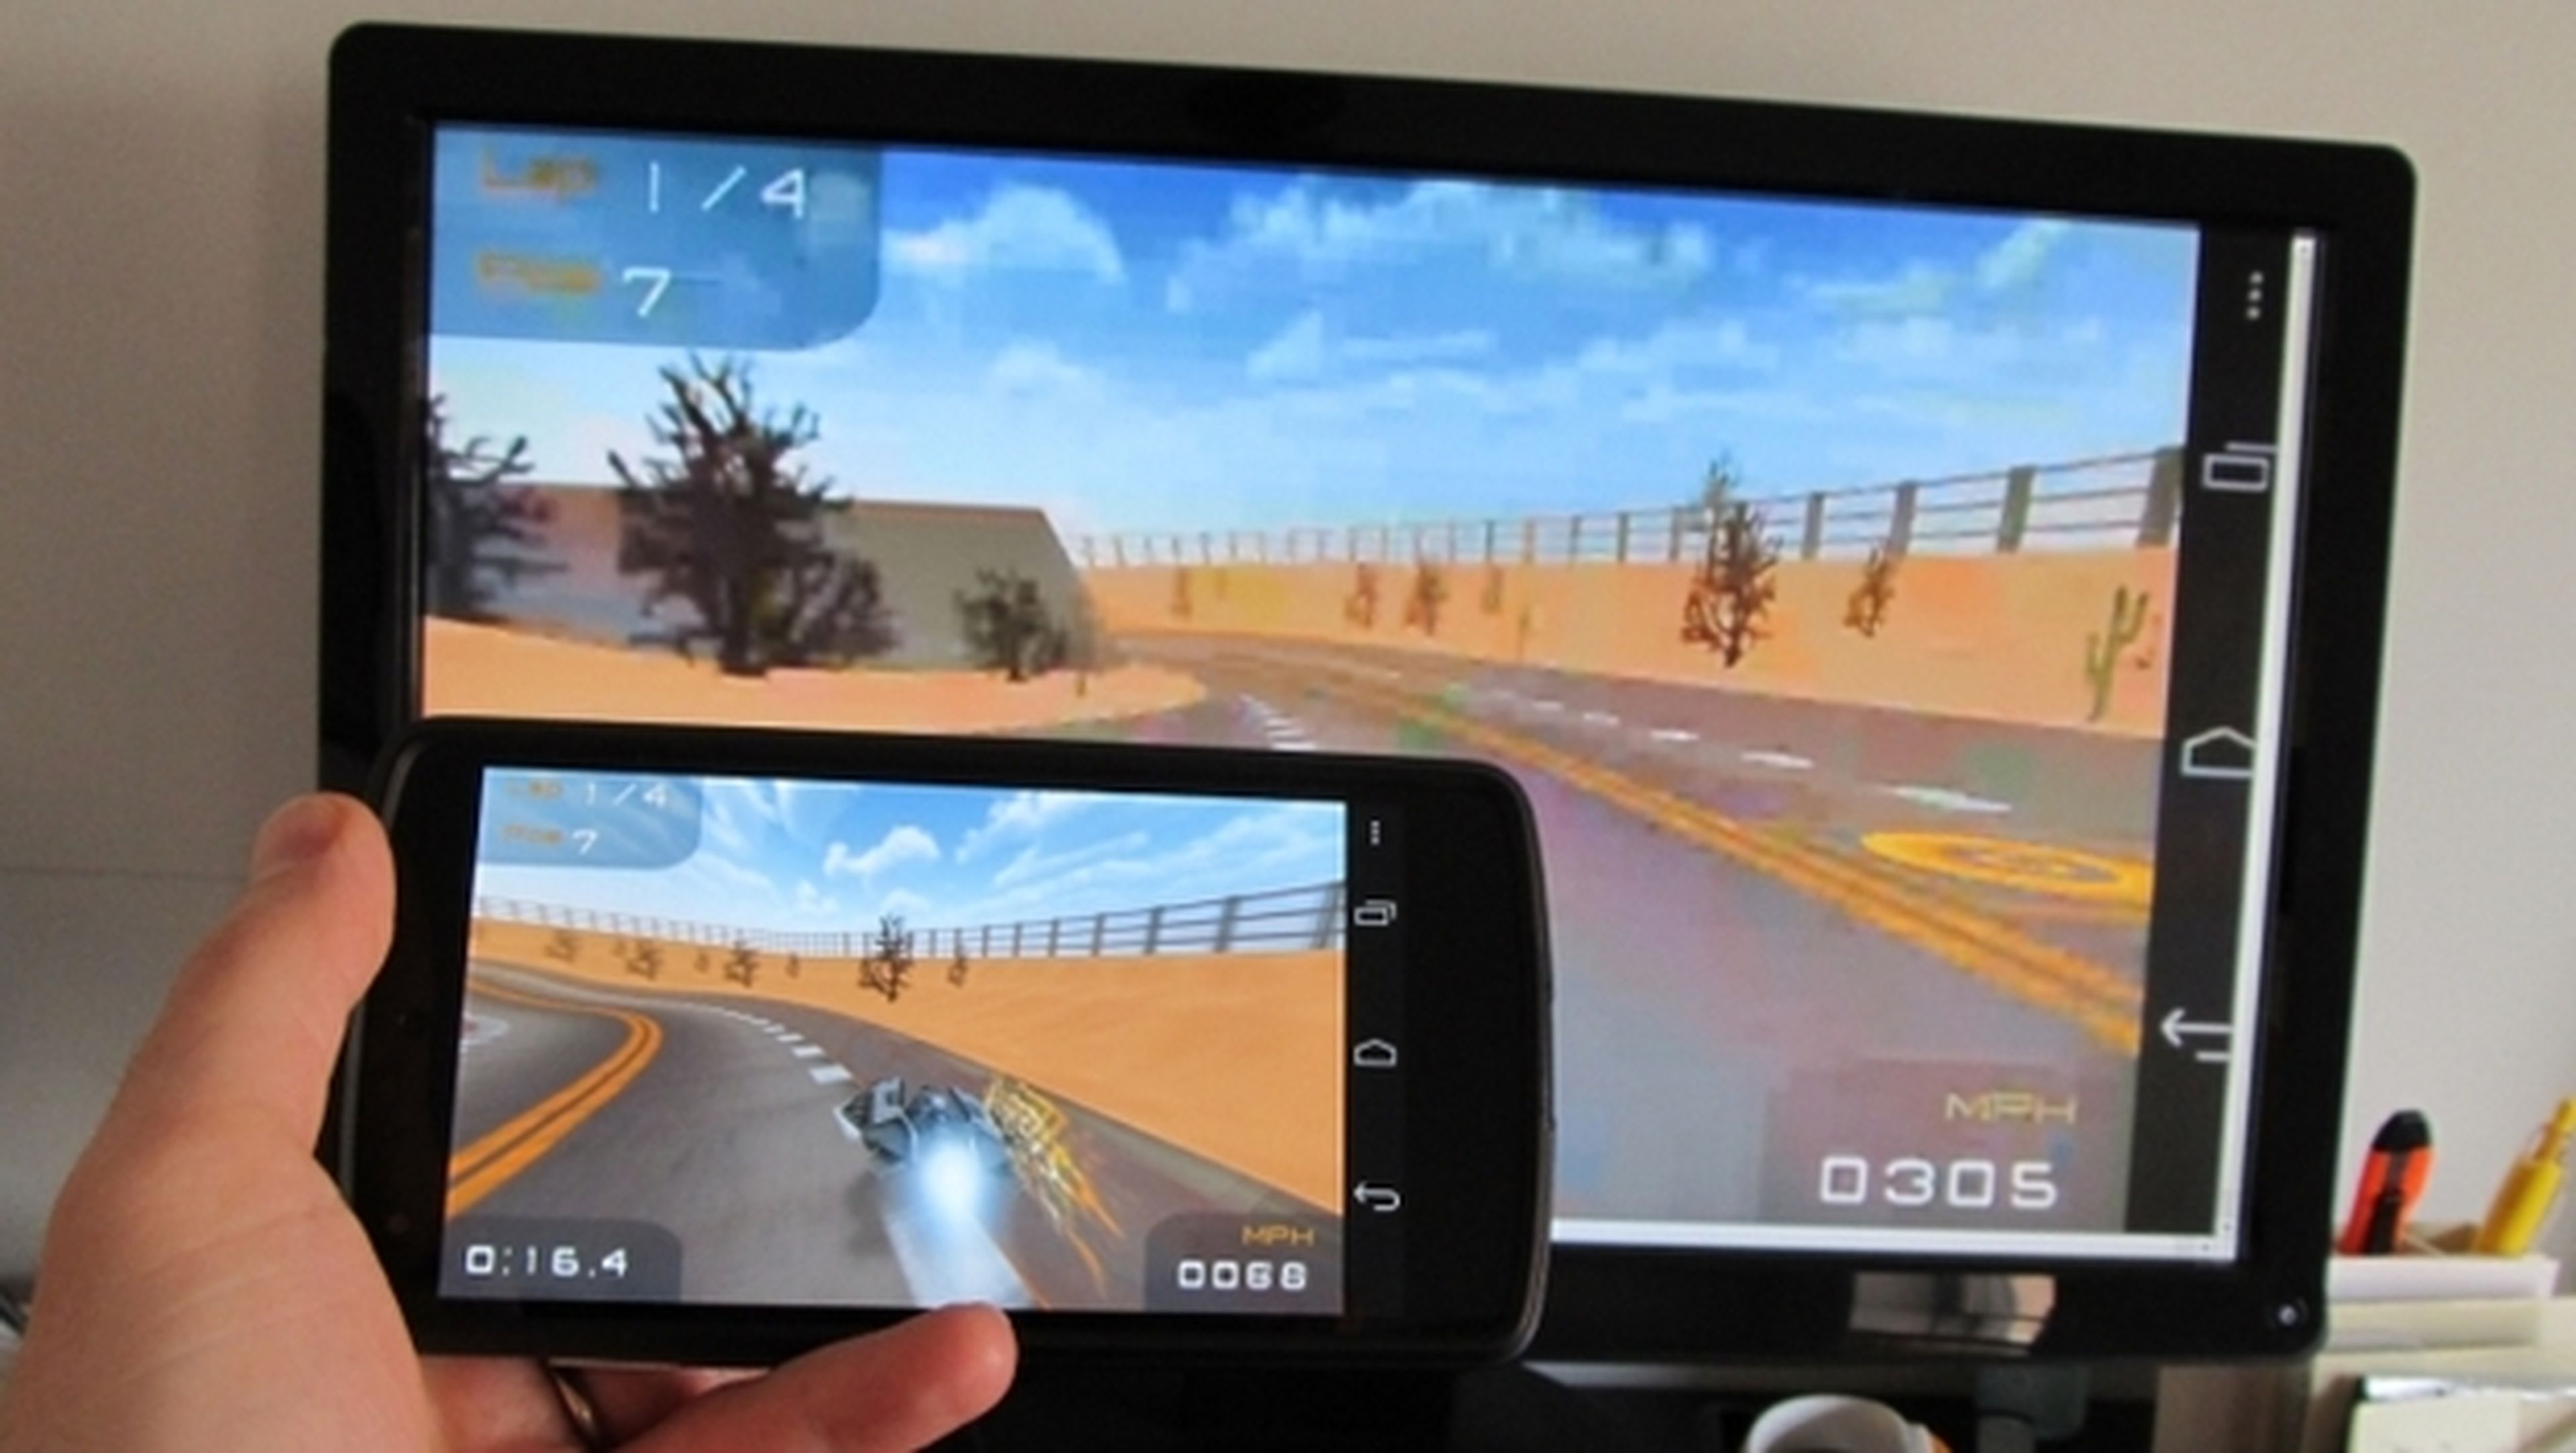 La actualización de Chromecast ya permite hacer mirroring, es decir, duplicar la pantalla de móvil o tablet en el televisor.